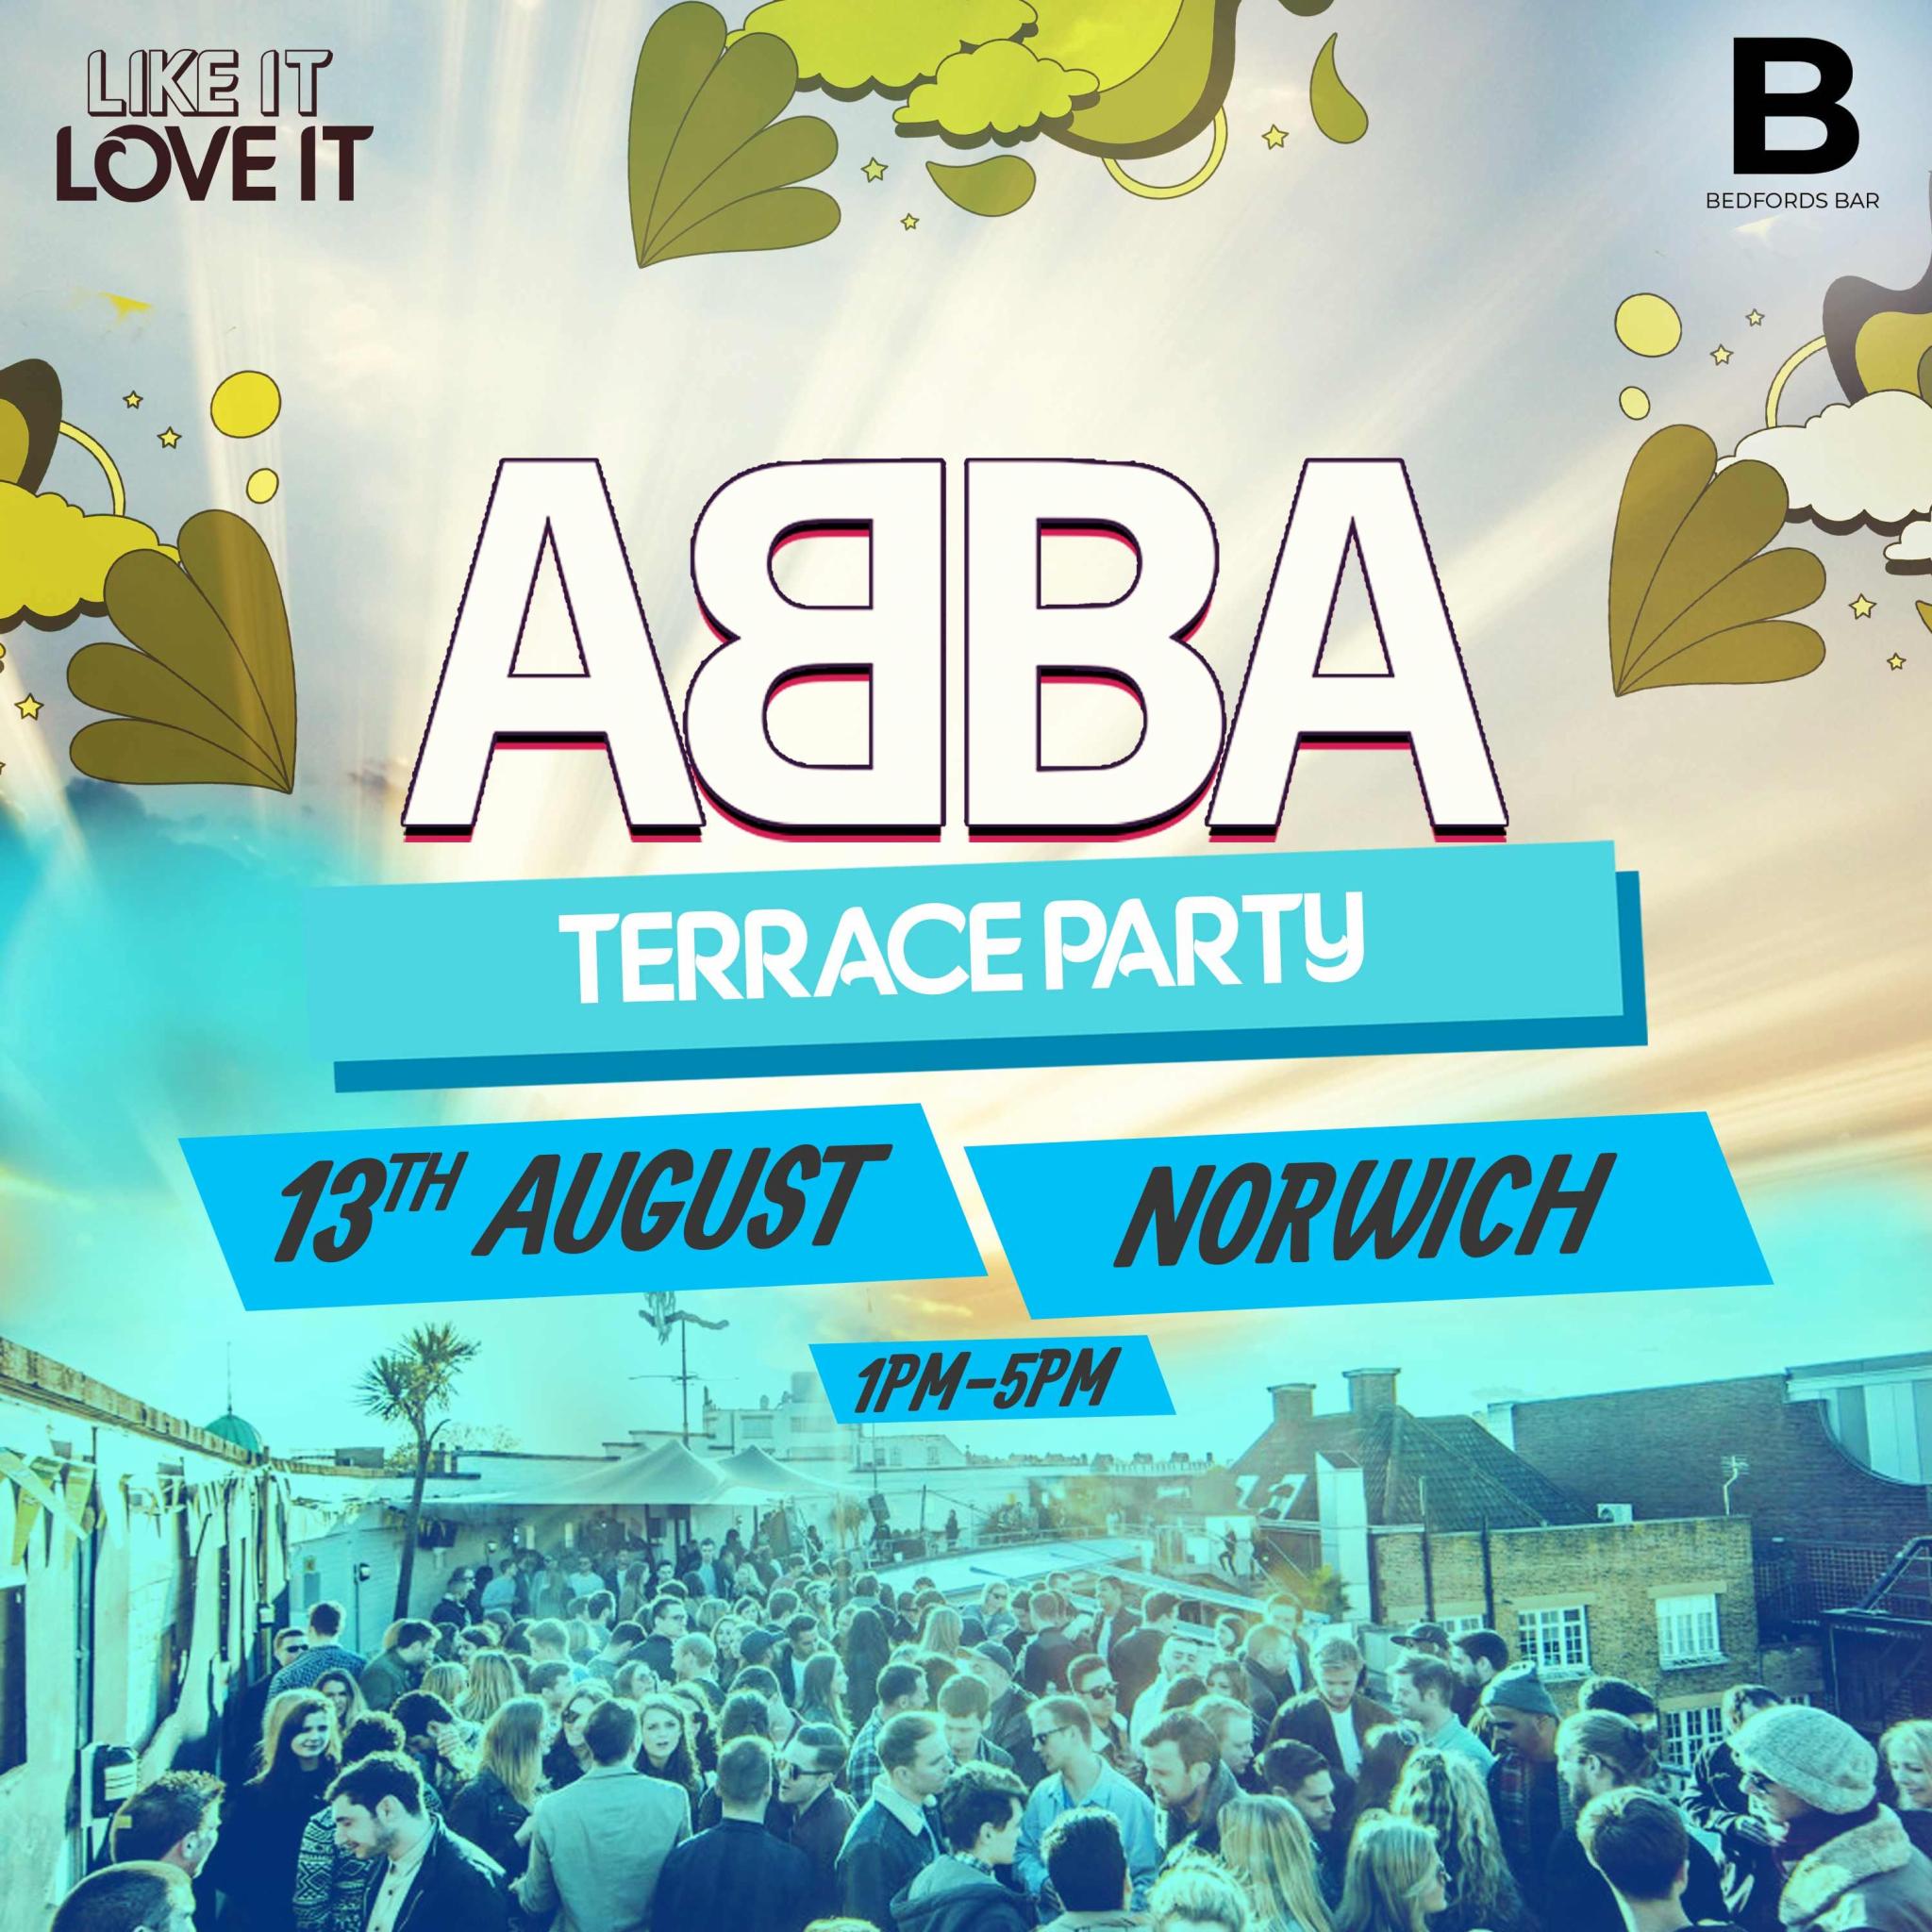 ABBA Terrace Party - Norwich